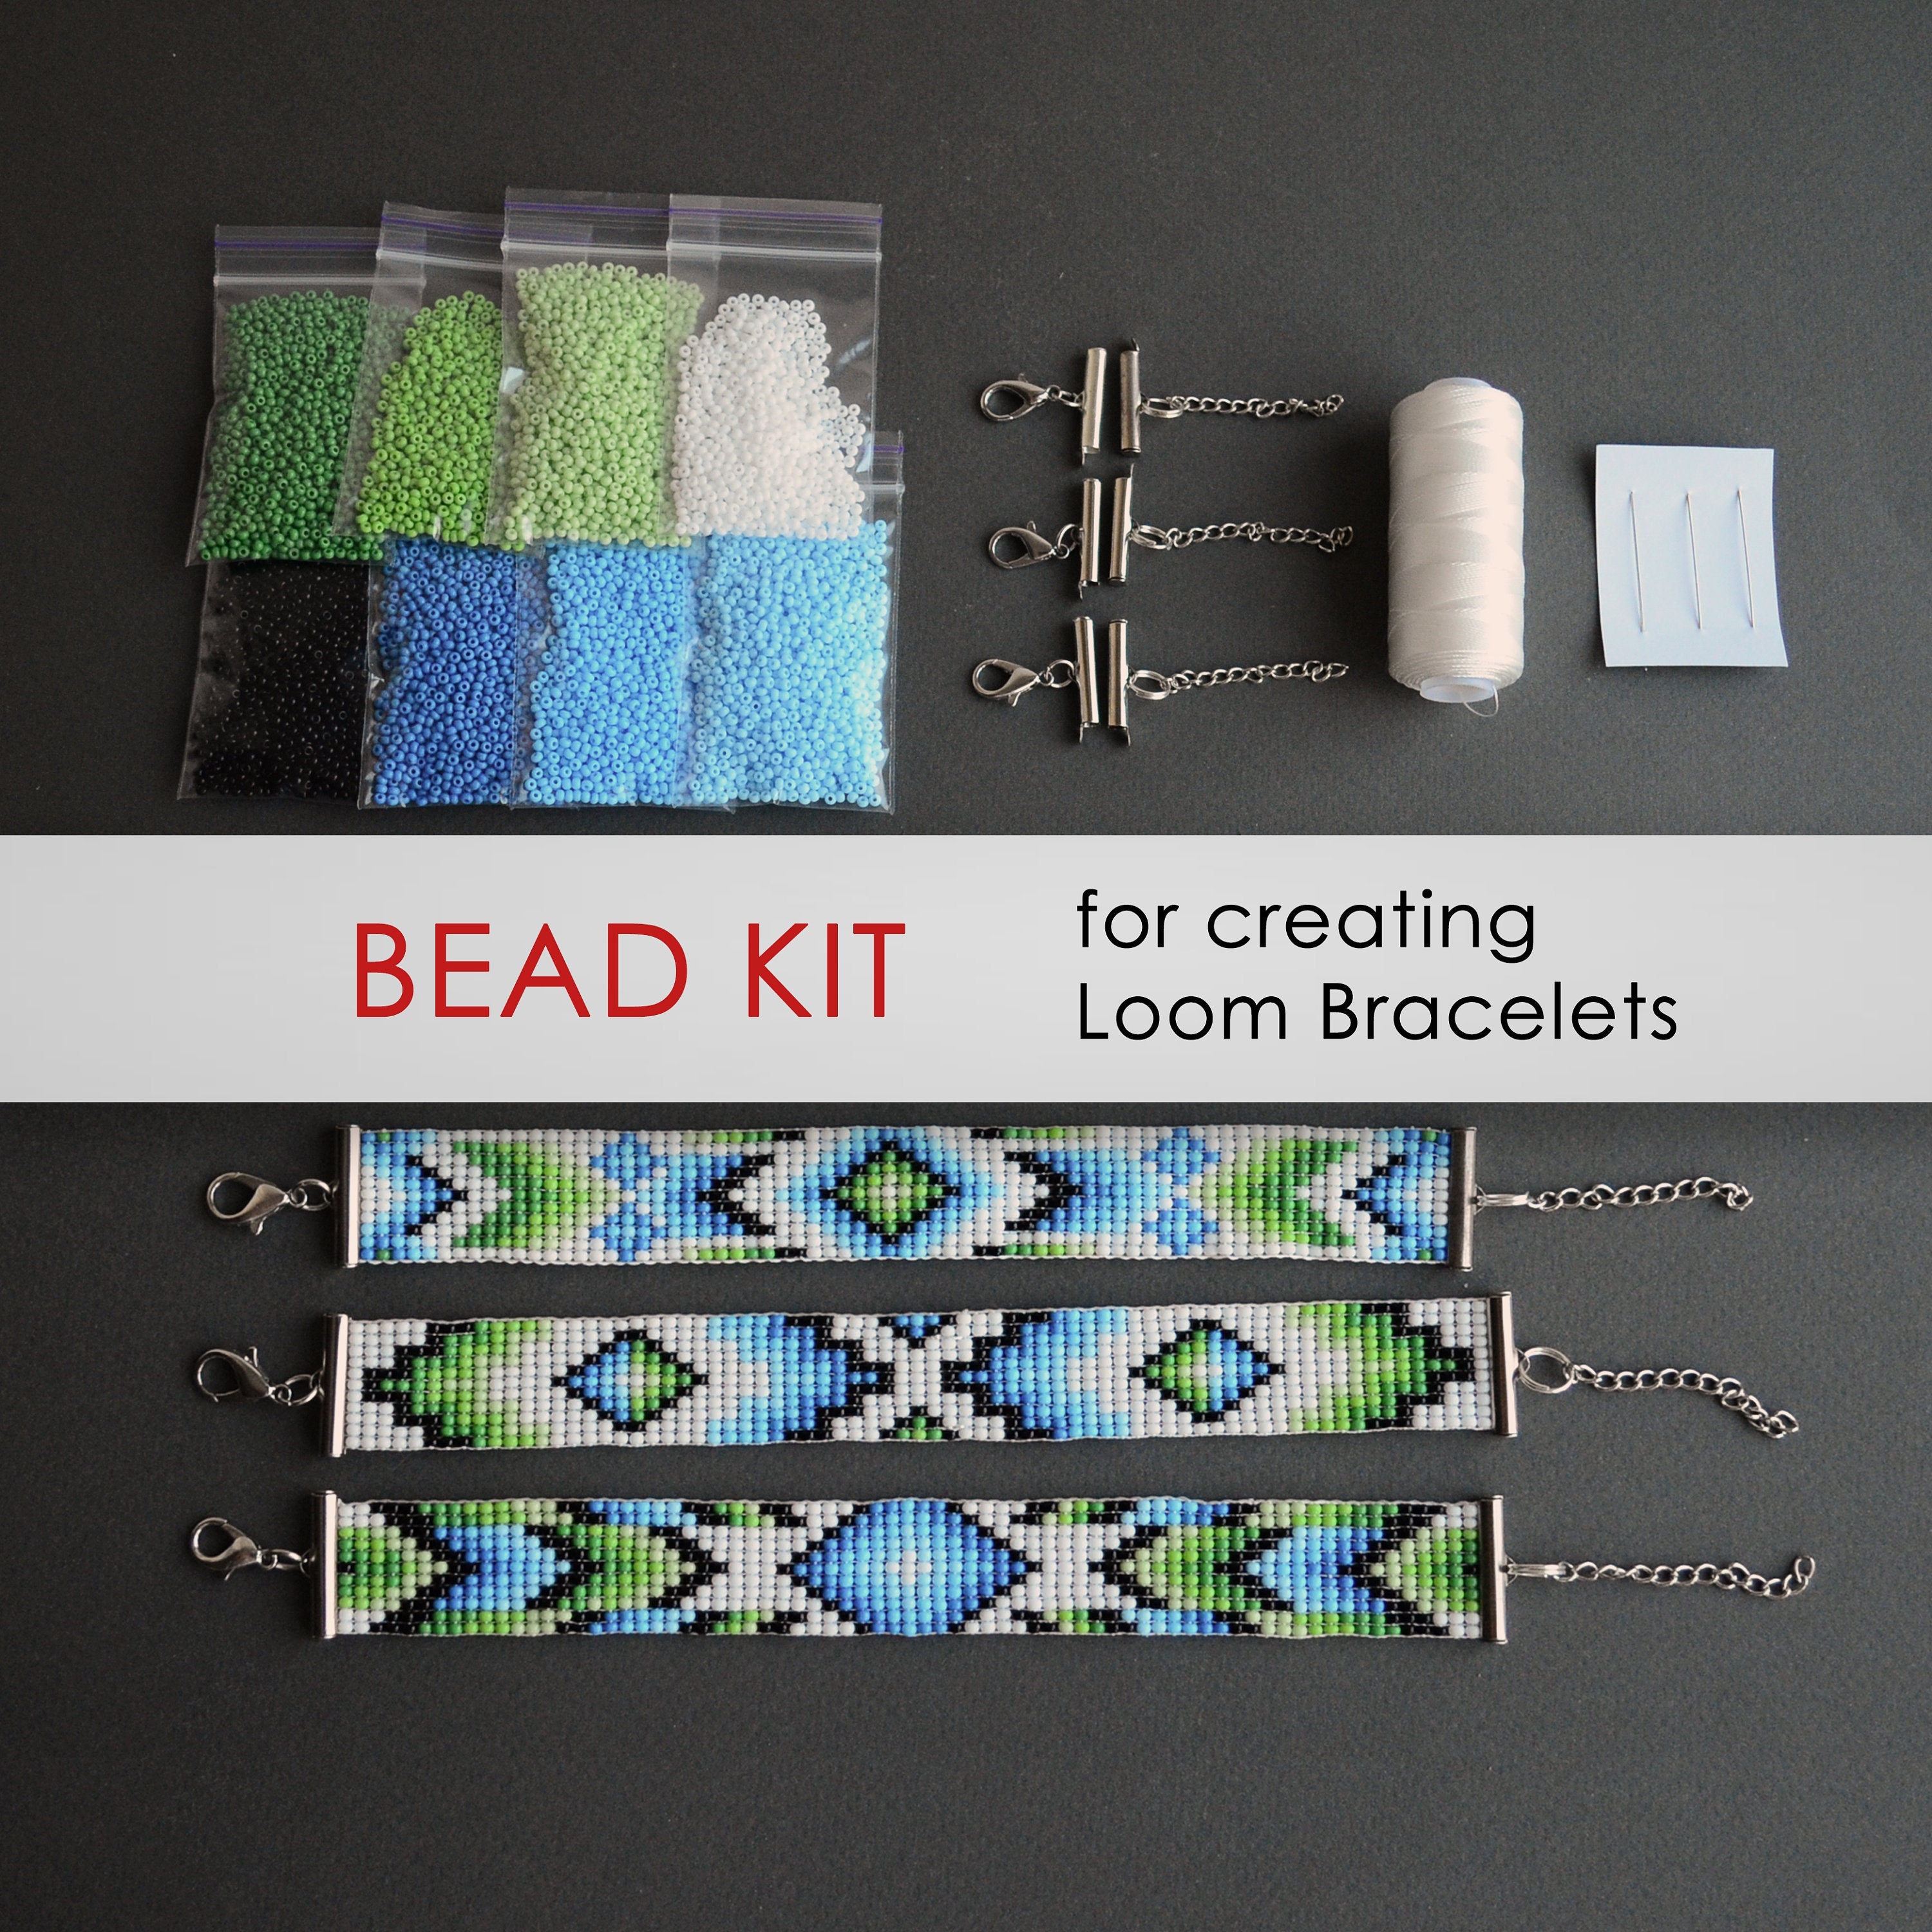 MUDO NEST 18000+ Loom Bands Kit: DIY Rubber Bands Kits, 500 Clips, 40  Charms,Loom Bracelet Making Kits for Kids, DIY Rubber Band Bracelet Kit